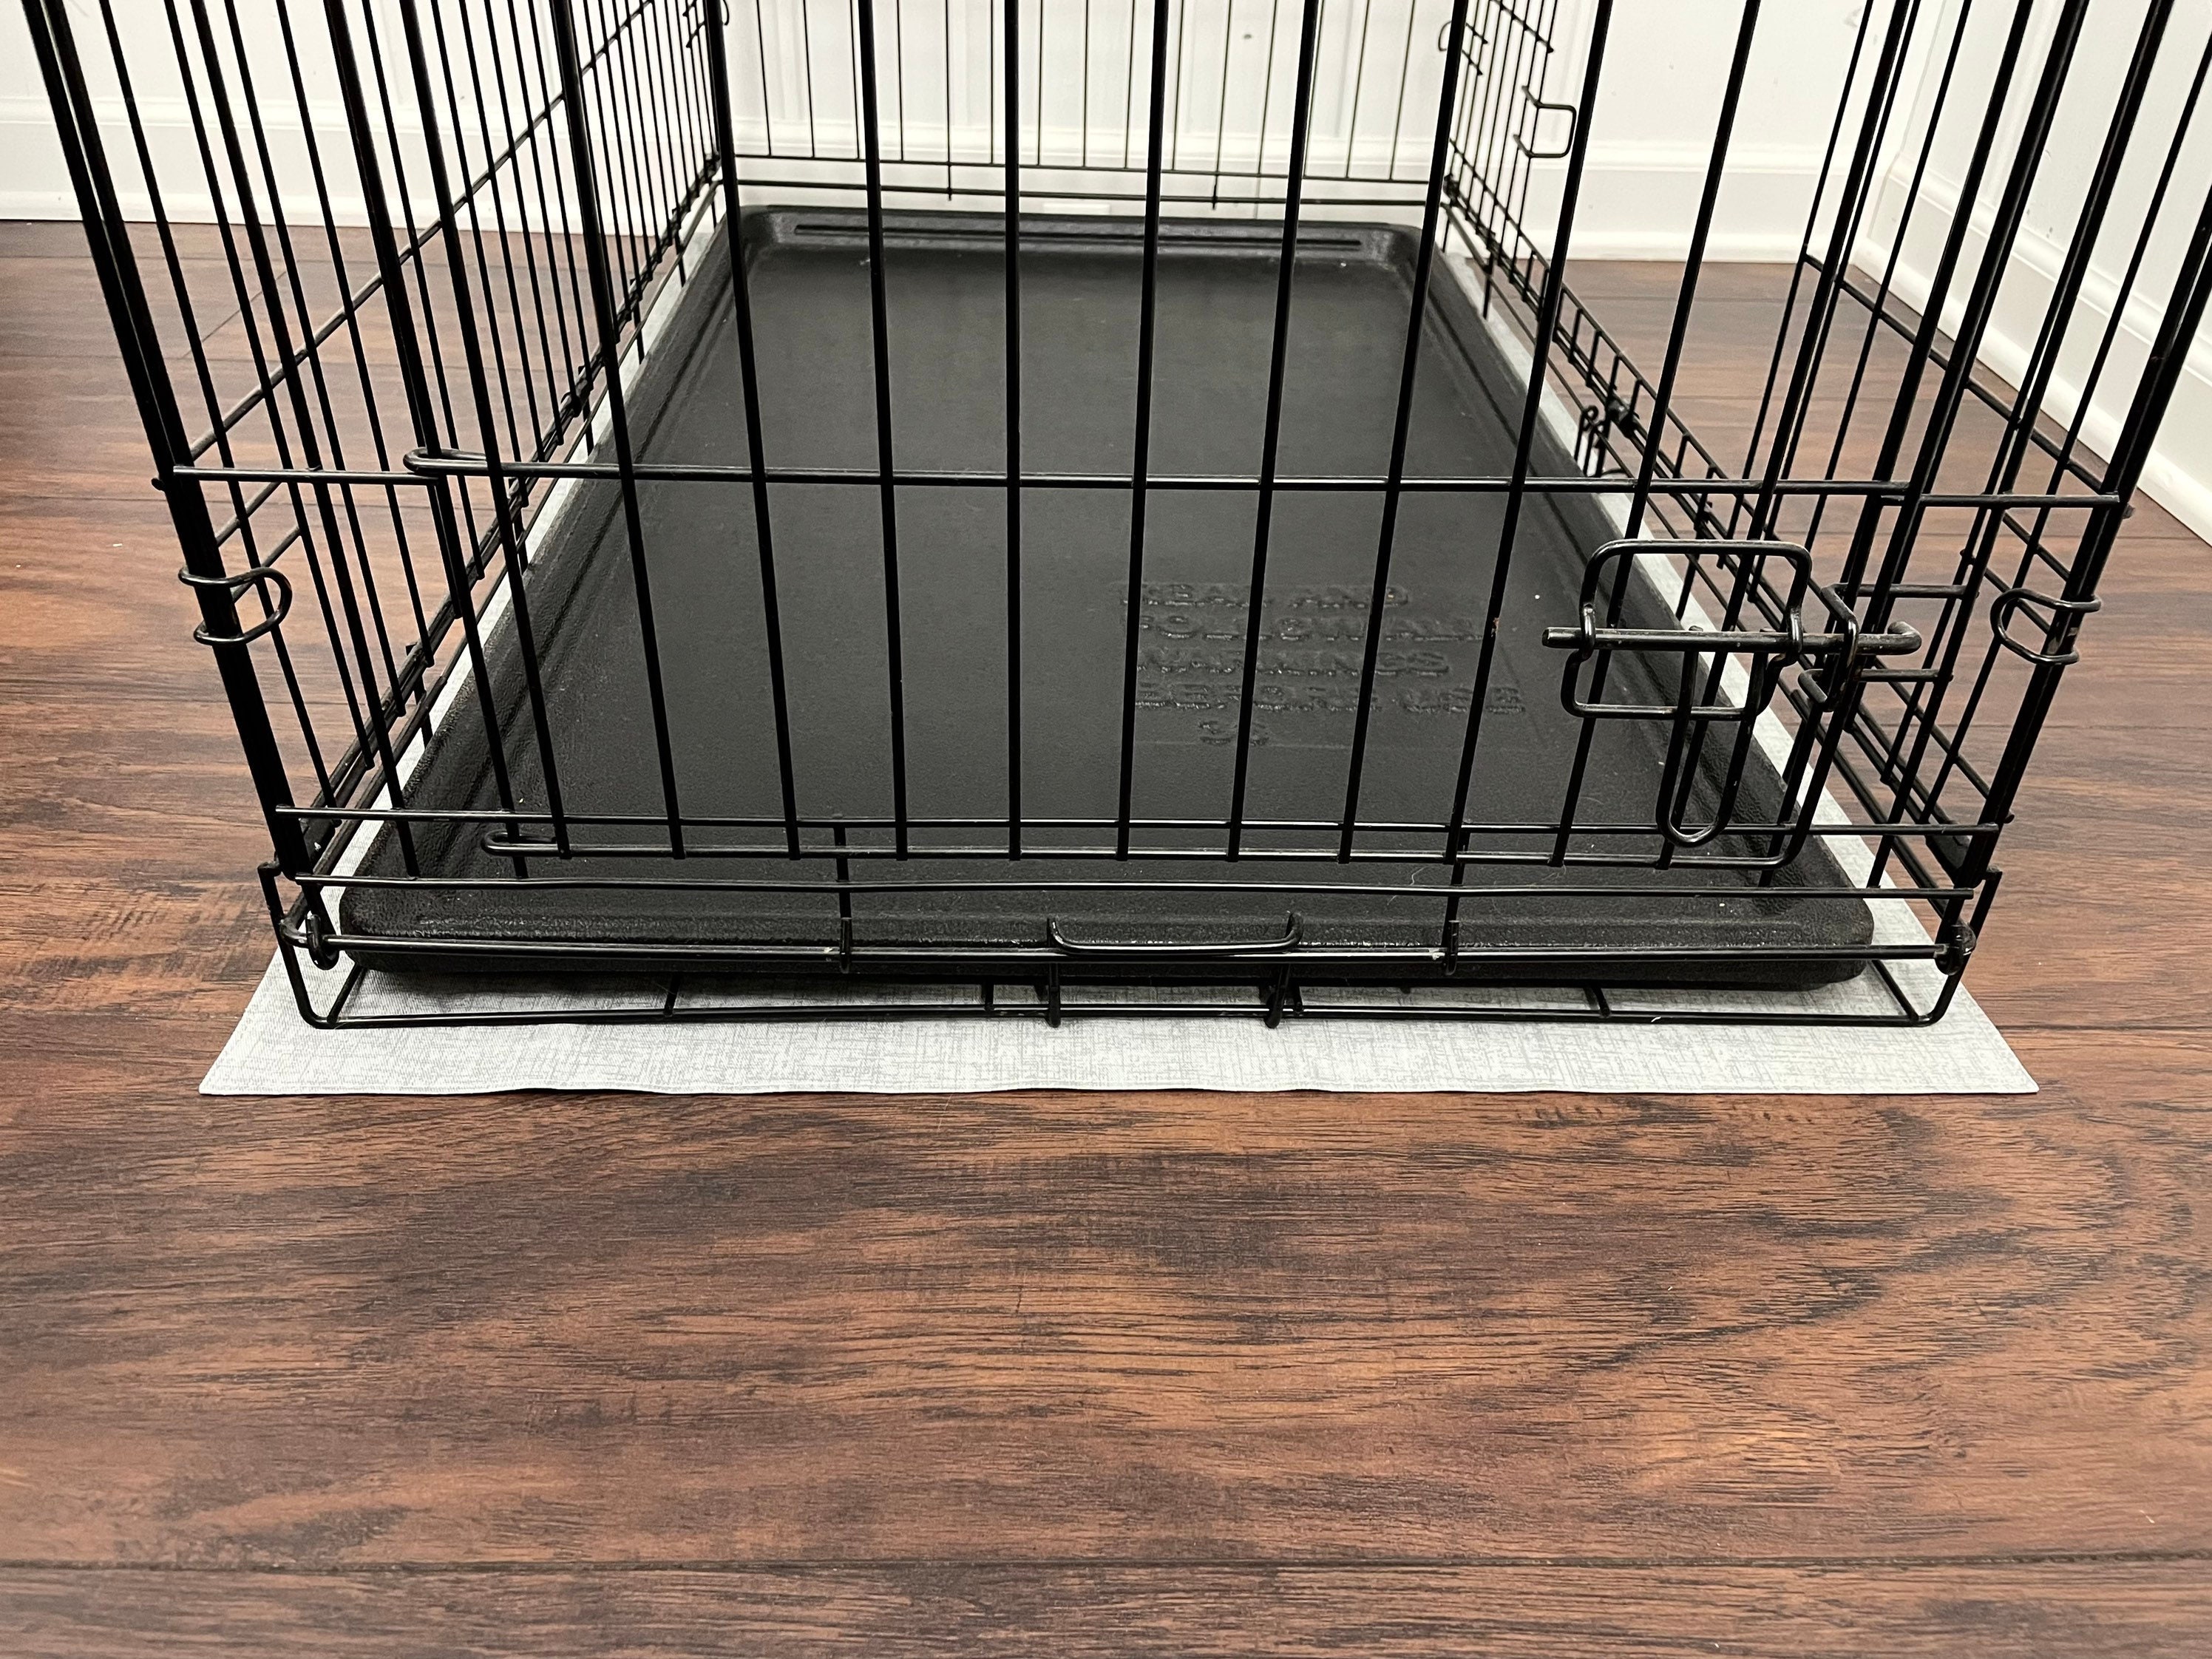 Crate Floor Mat custom Sized 